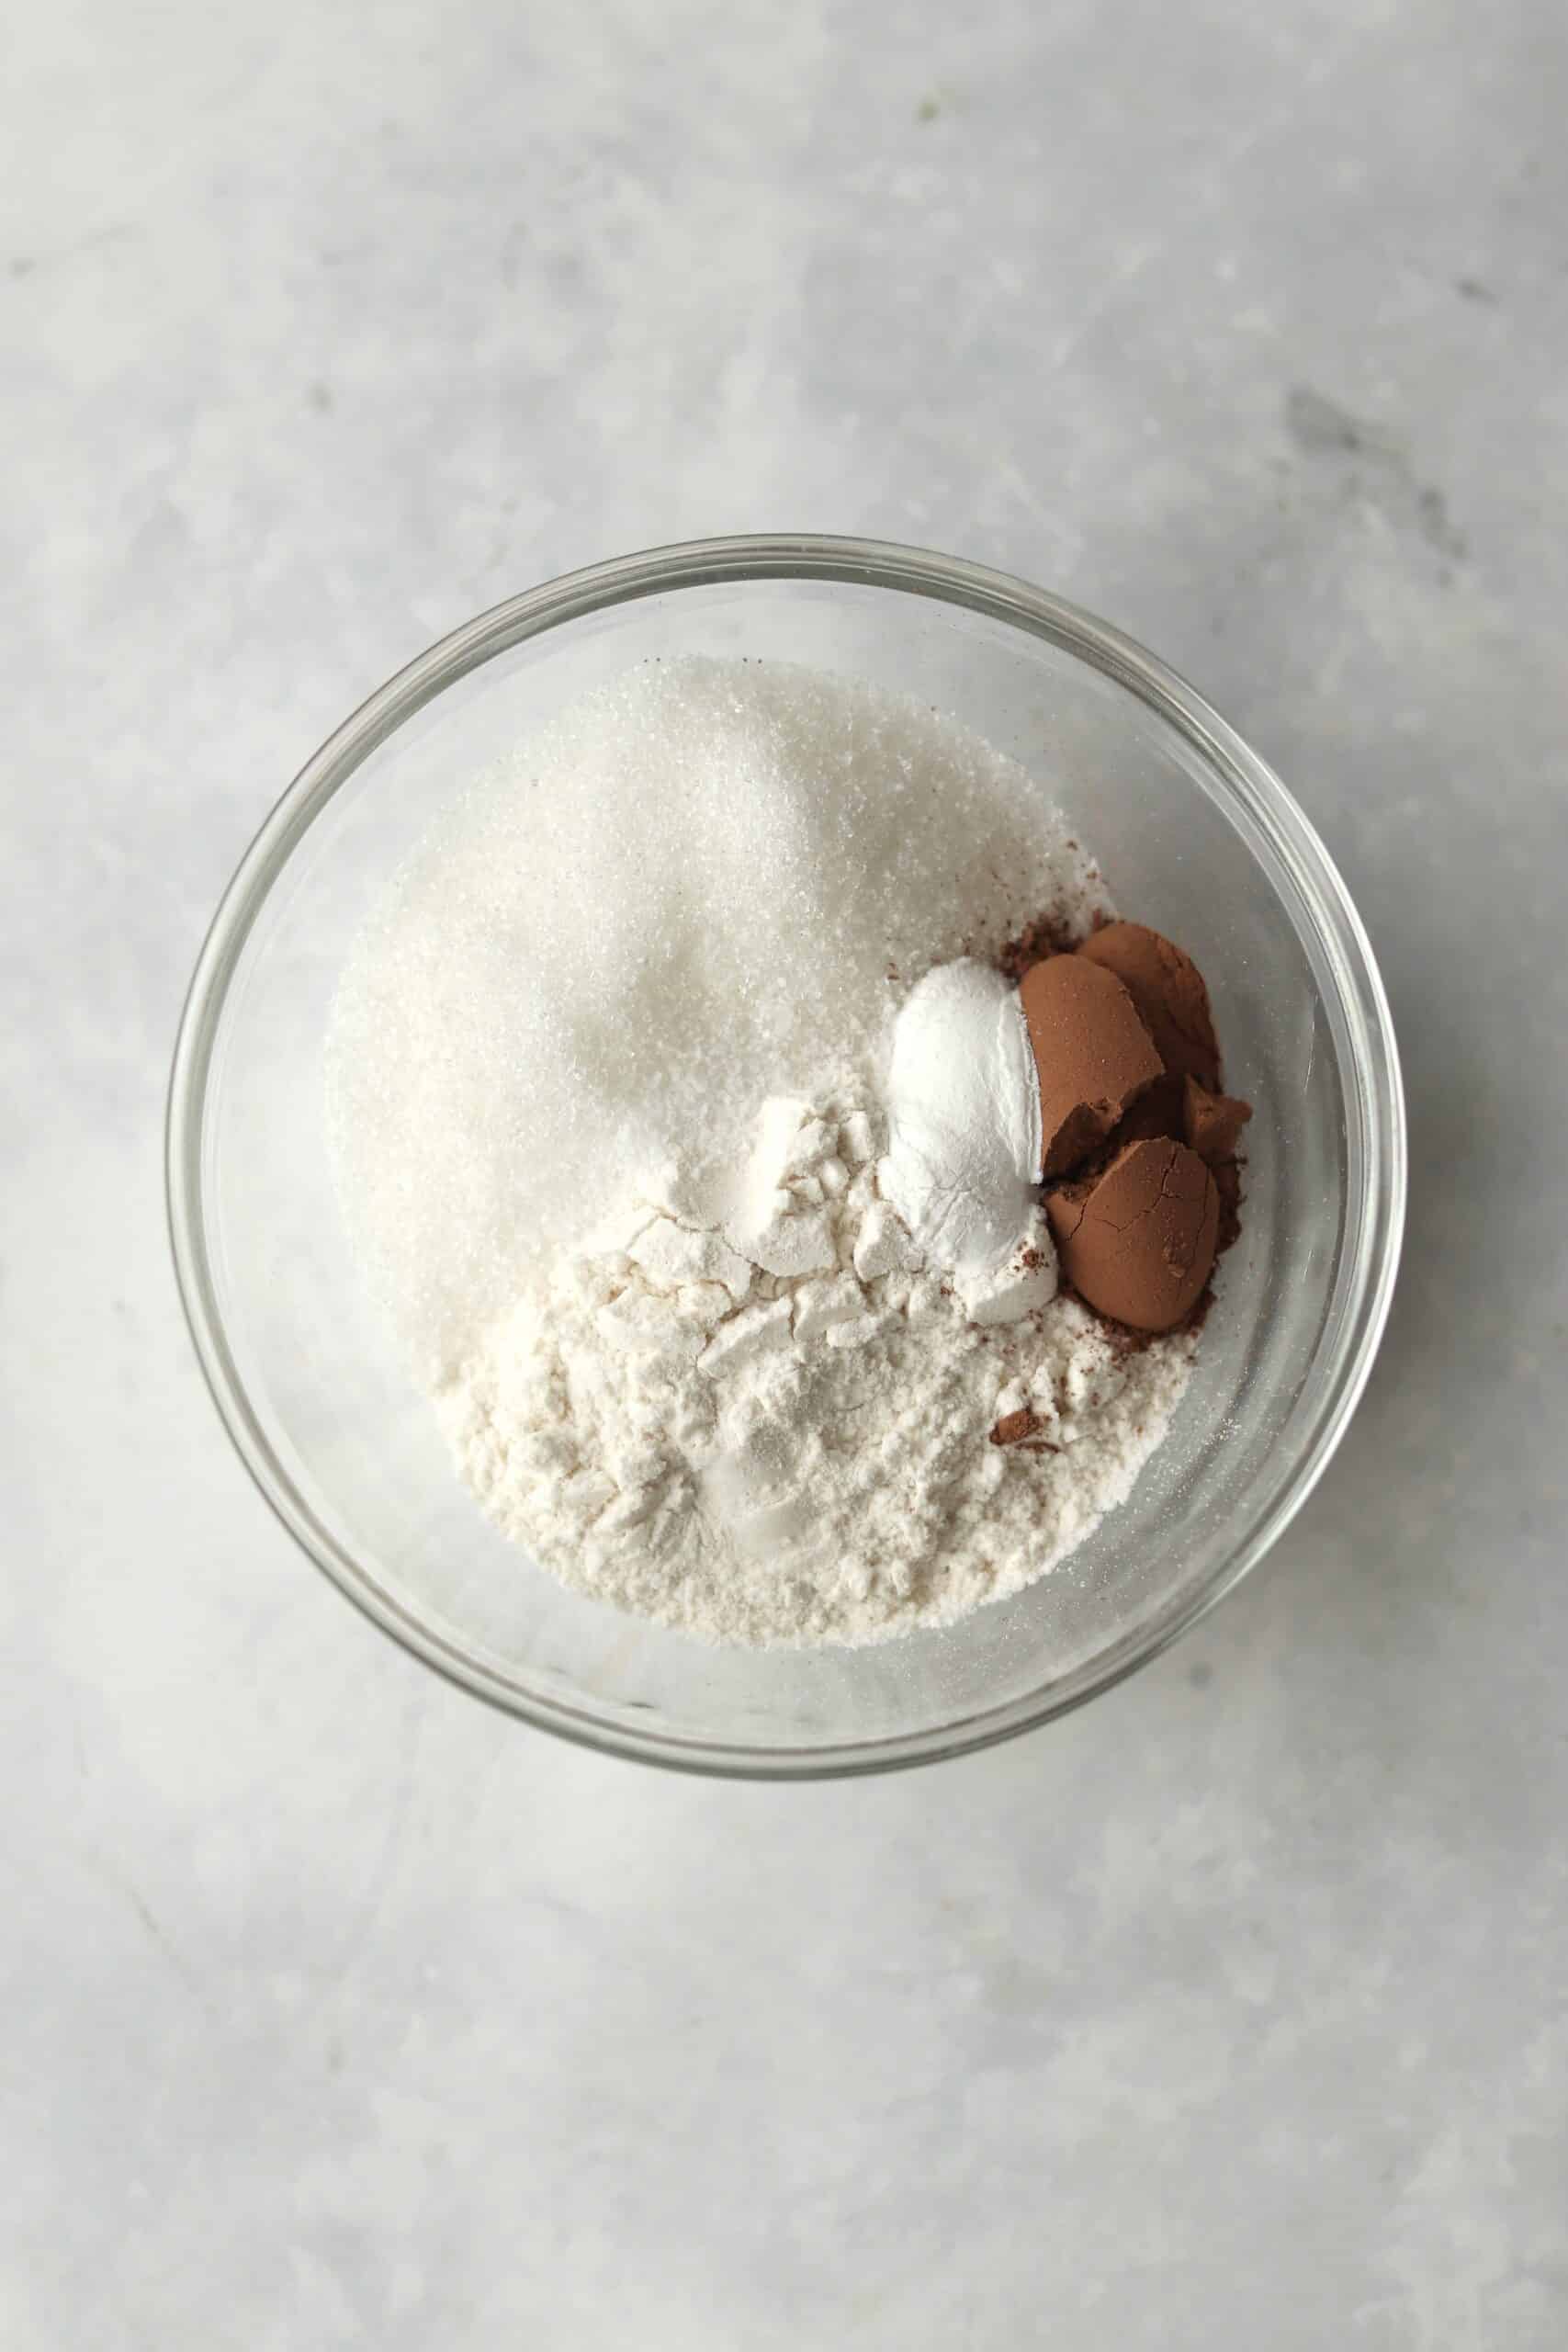 flour, cocoa powder, sugar, baking powder, and salt in a bowl.